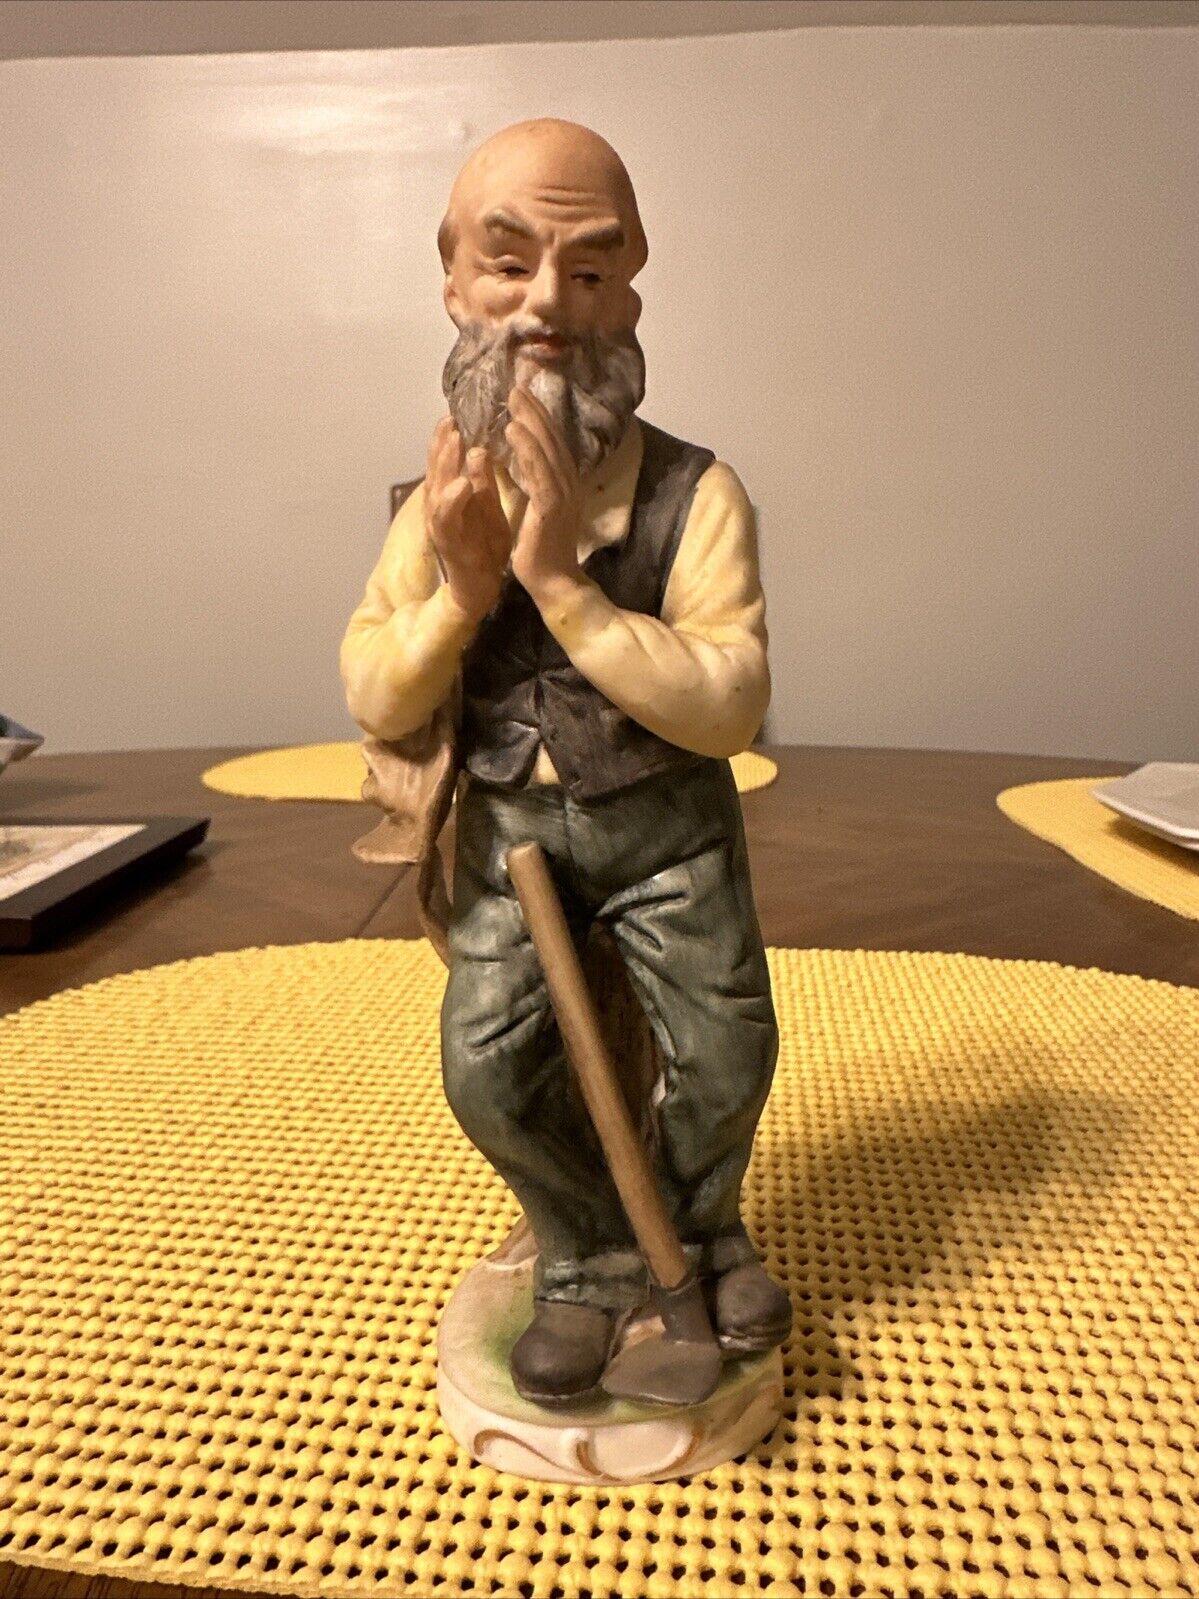 VTG Old Bald Man Praying Figurine